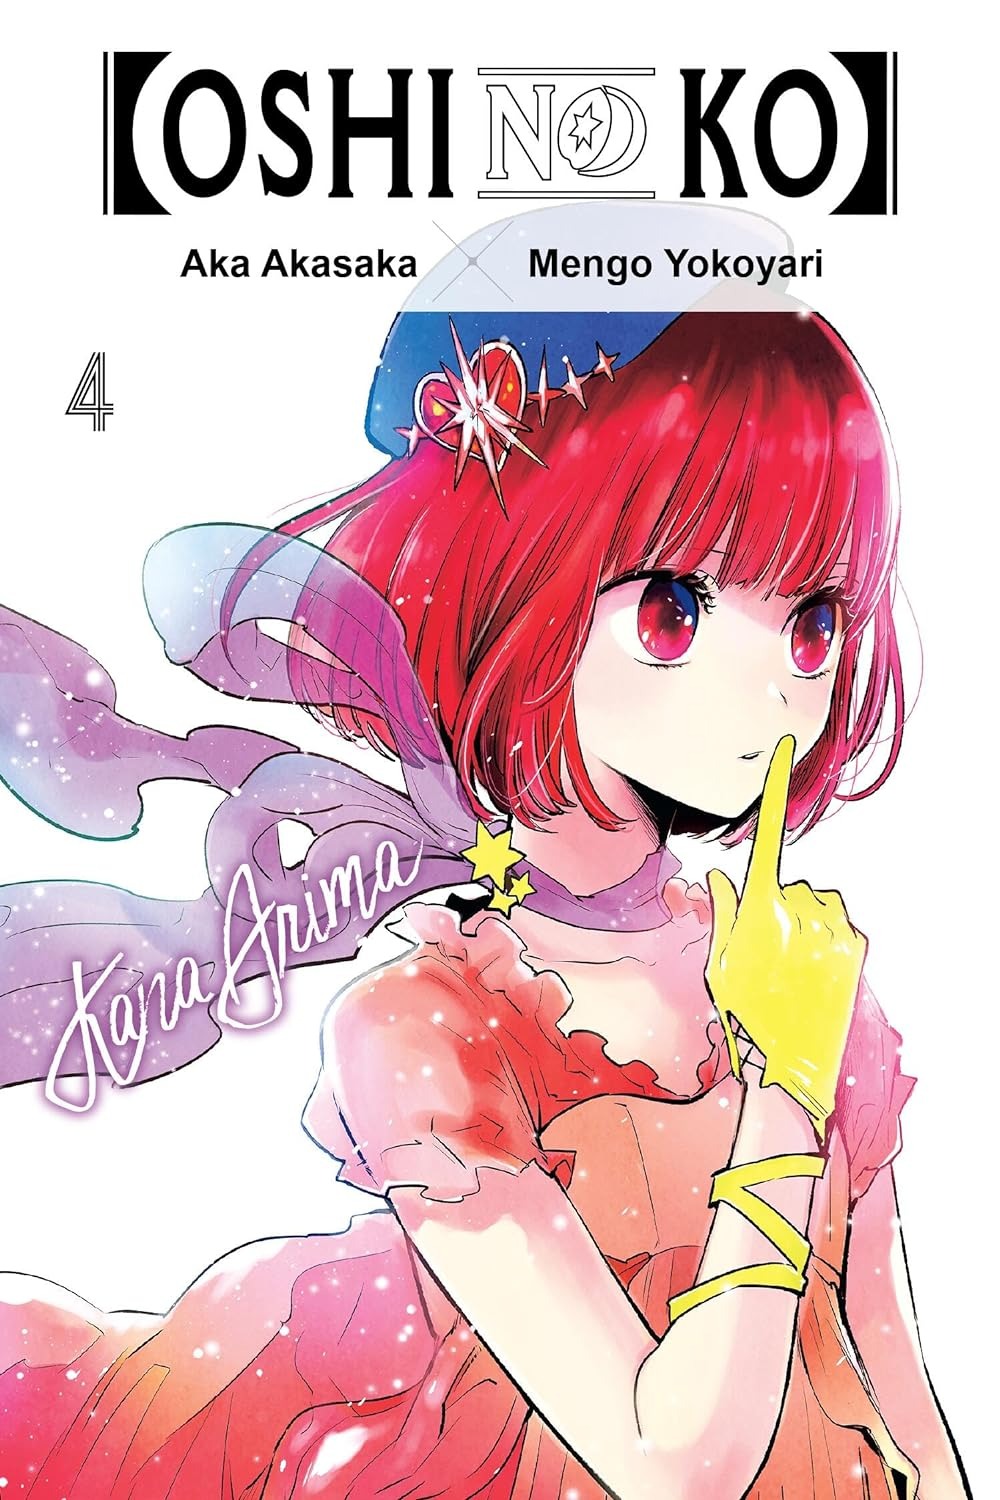 Oshi No Ko Manga Volume 4